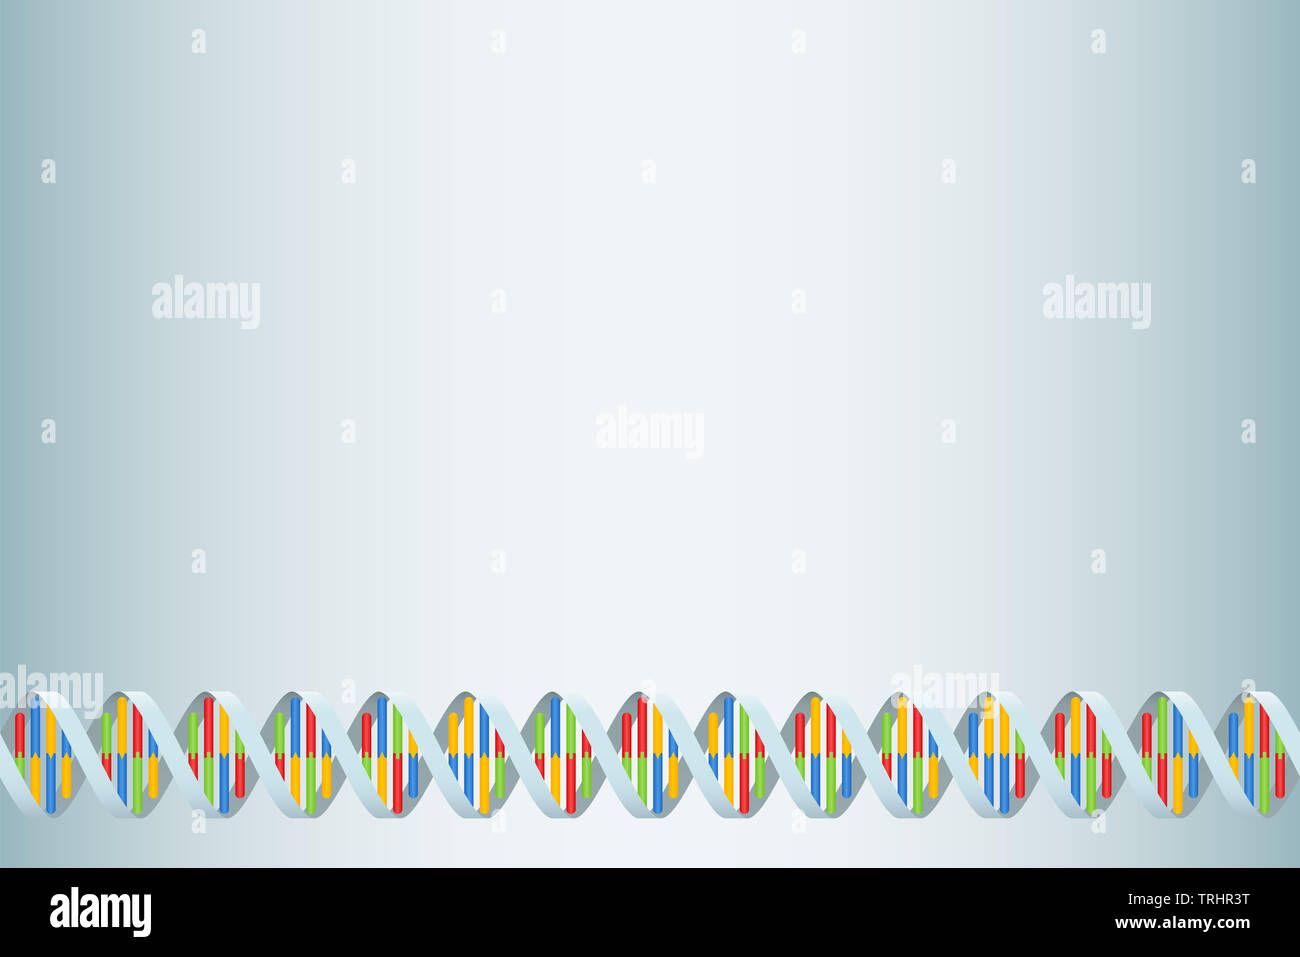 DNA-Doppelhelix Hintergrund mit nukleinbasen Adenin, Cytosin, Guanin und Thymin in vier verschiedenen Farben. Stockfoto